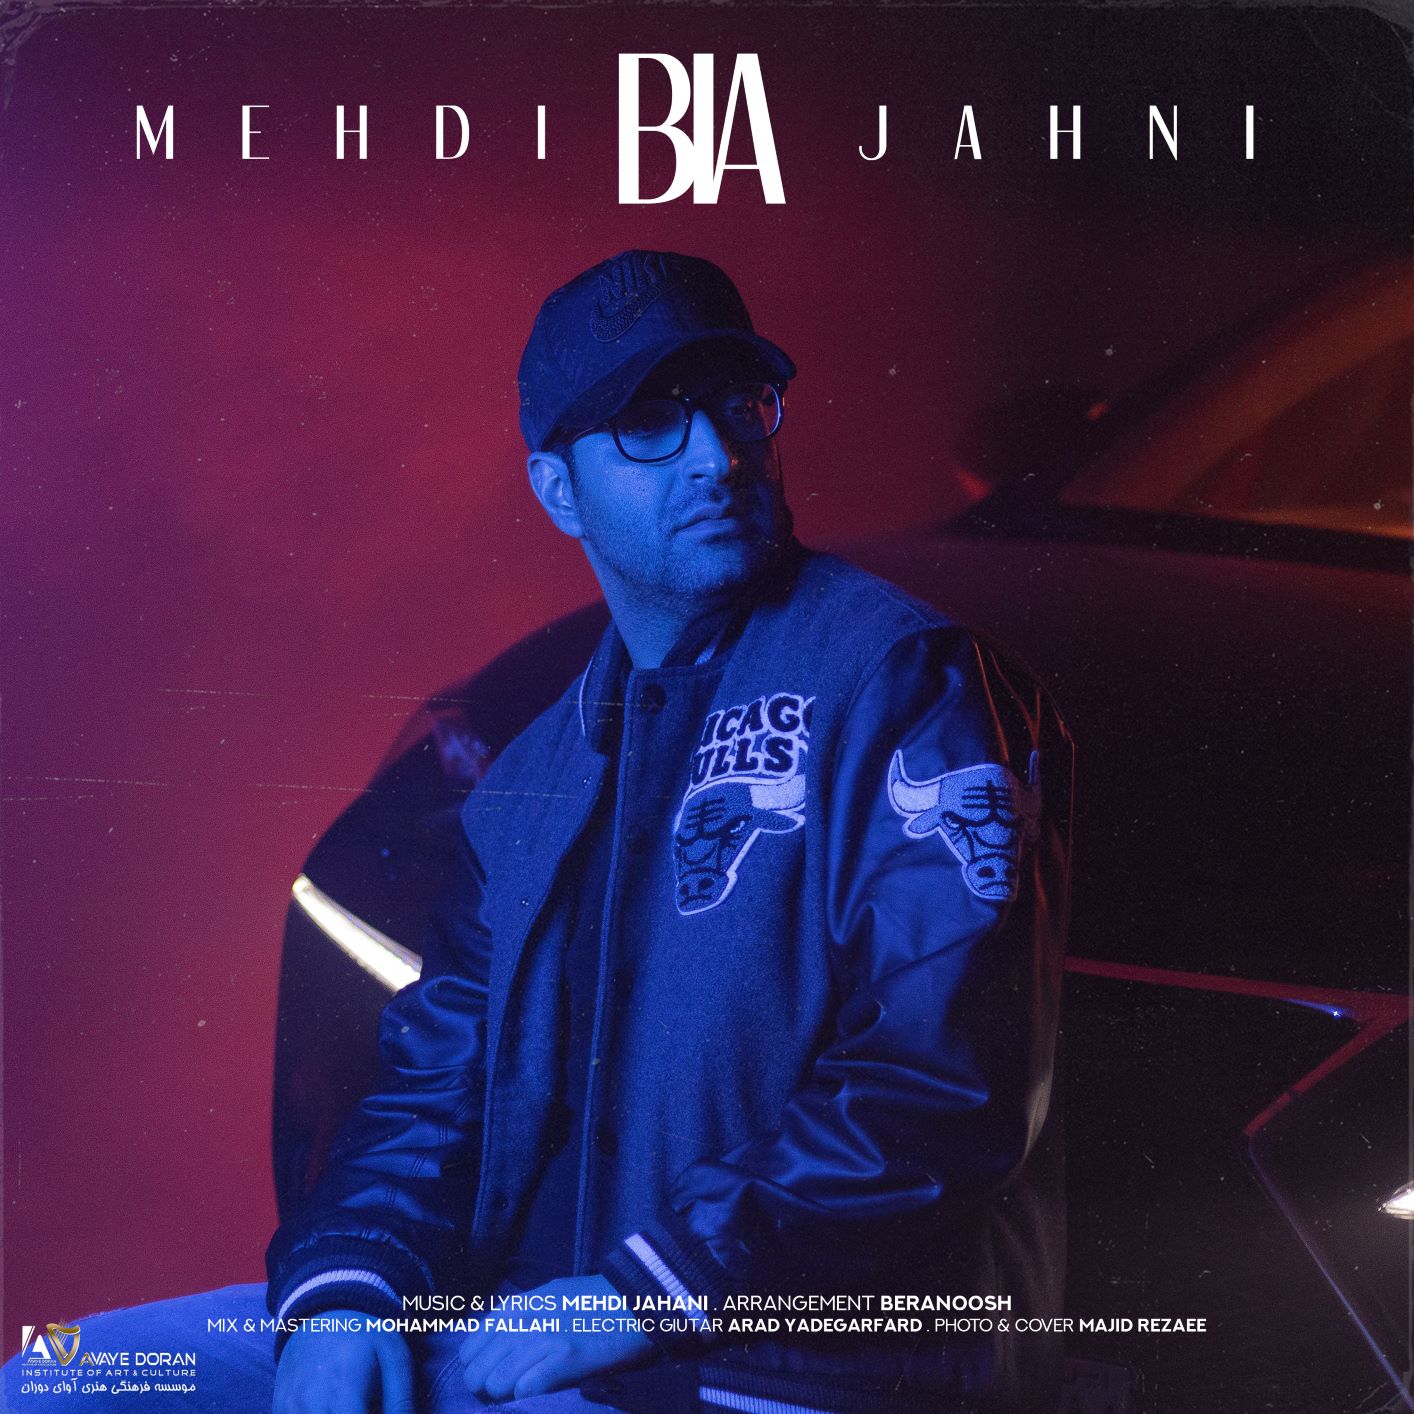  دانلود آهنگ جدید مهدی جهانی - بیا | Download New Music By Mehdi Jahani - Bia